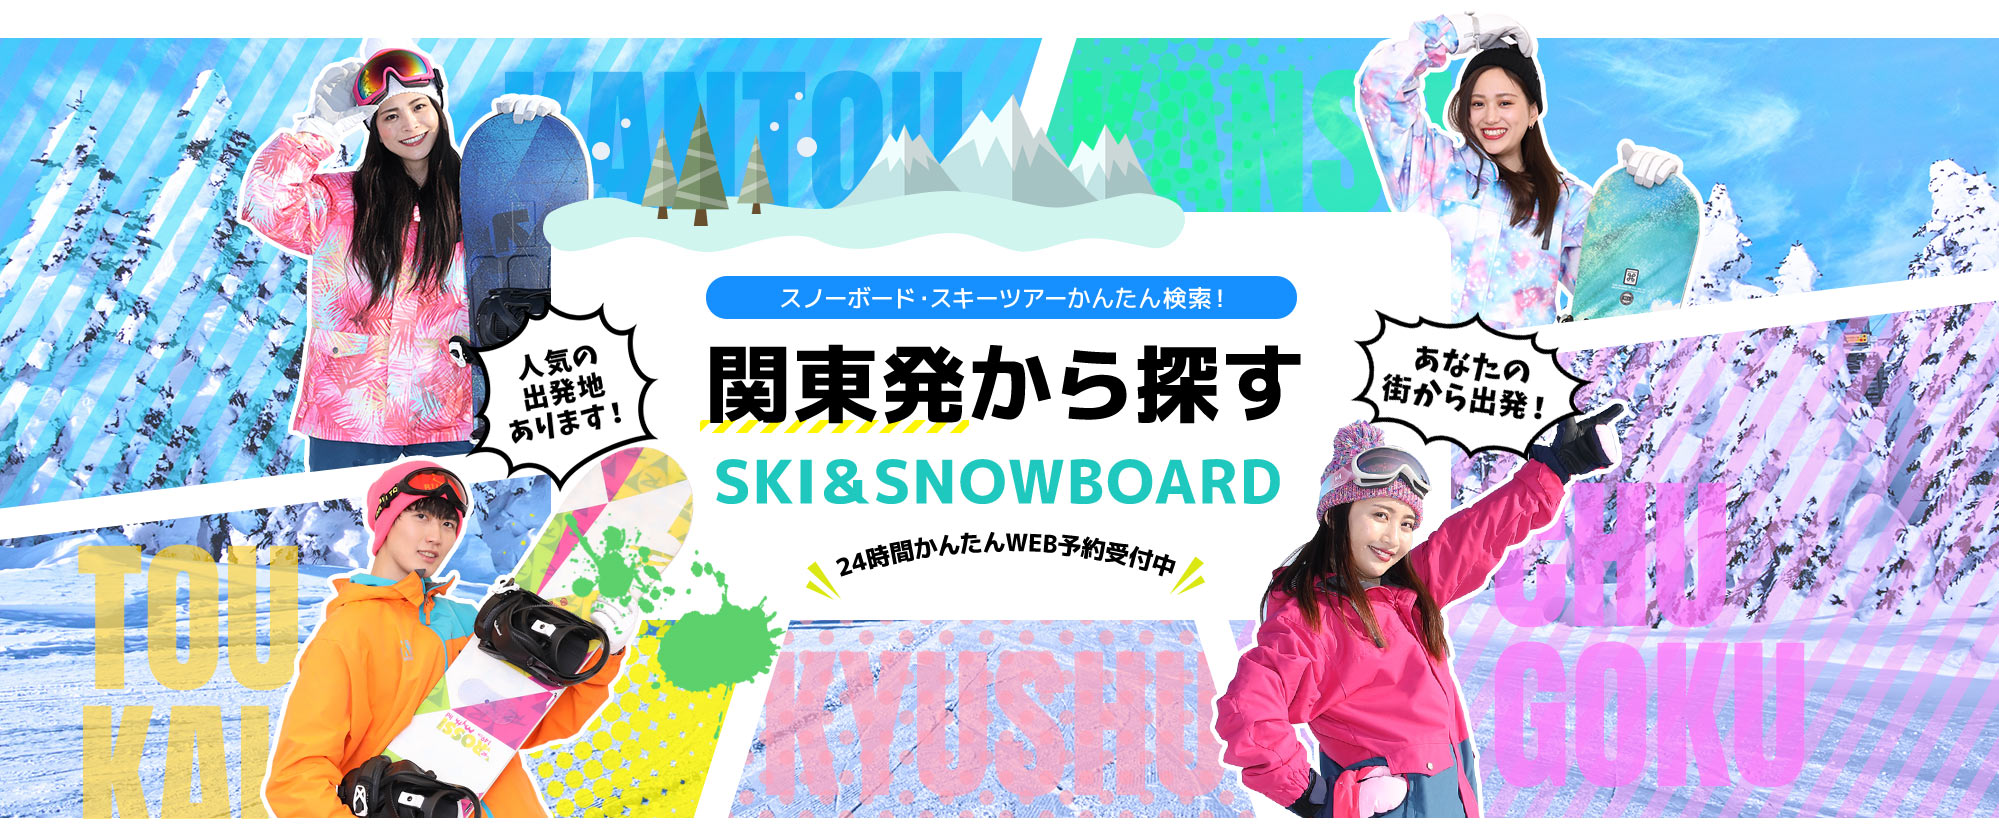 スノーボード・スキーツアーかんたん検索！ 関東発から探す SKI&SNOWBOARD